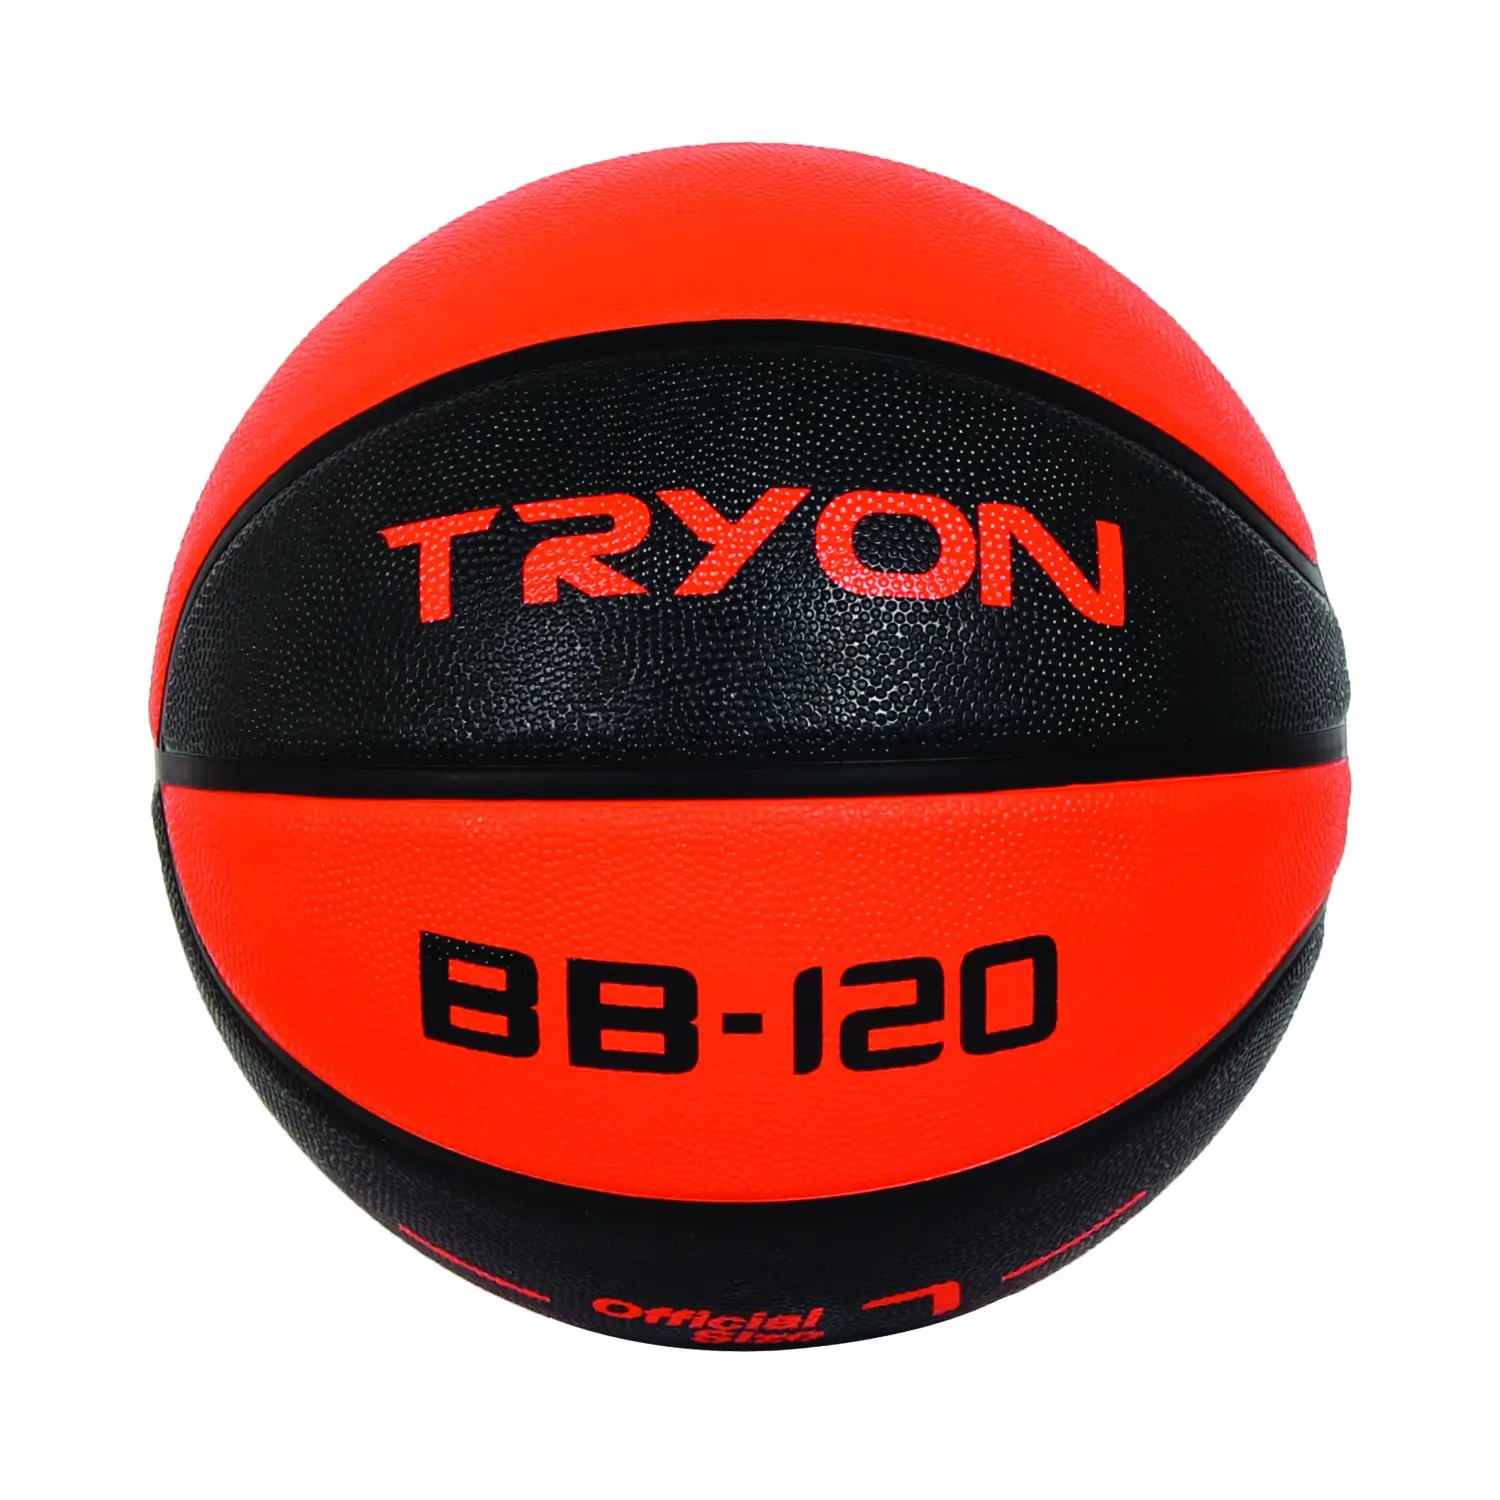 TRYON Basketbol Topu Bb-120 7 No Yeşil